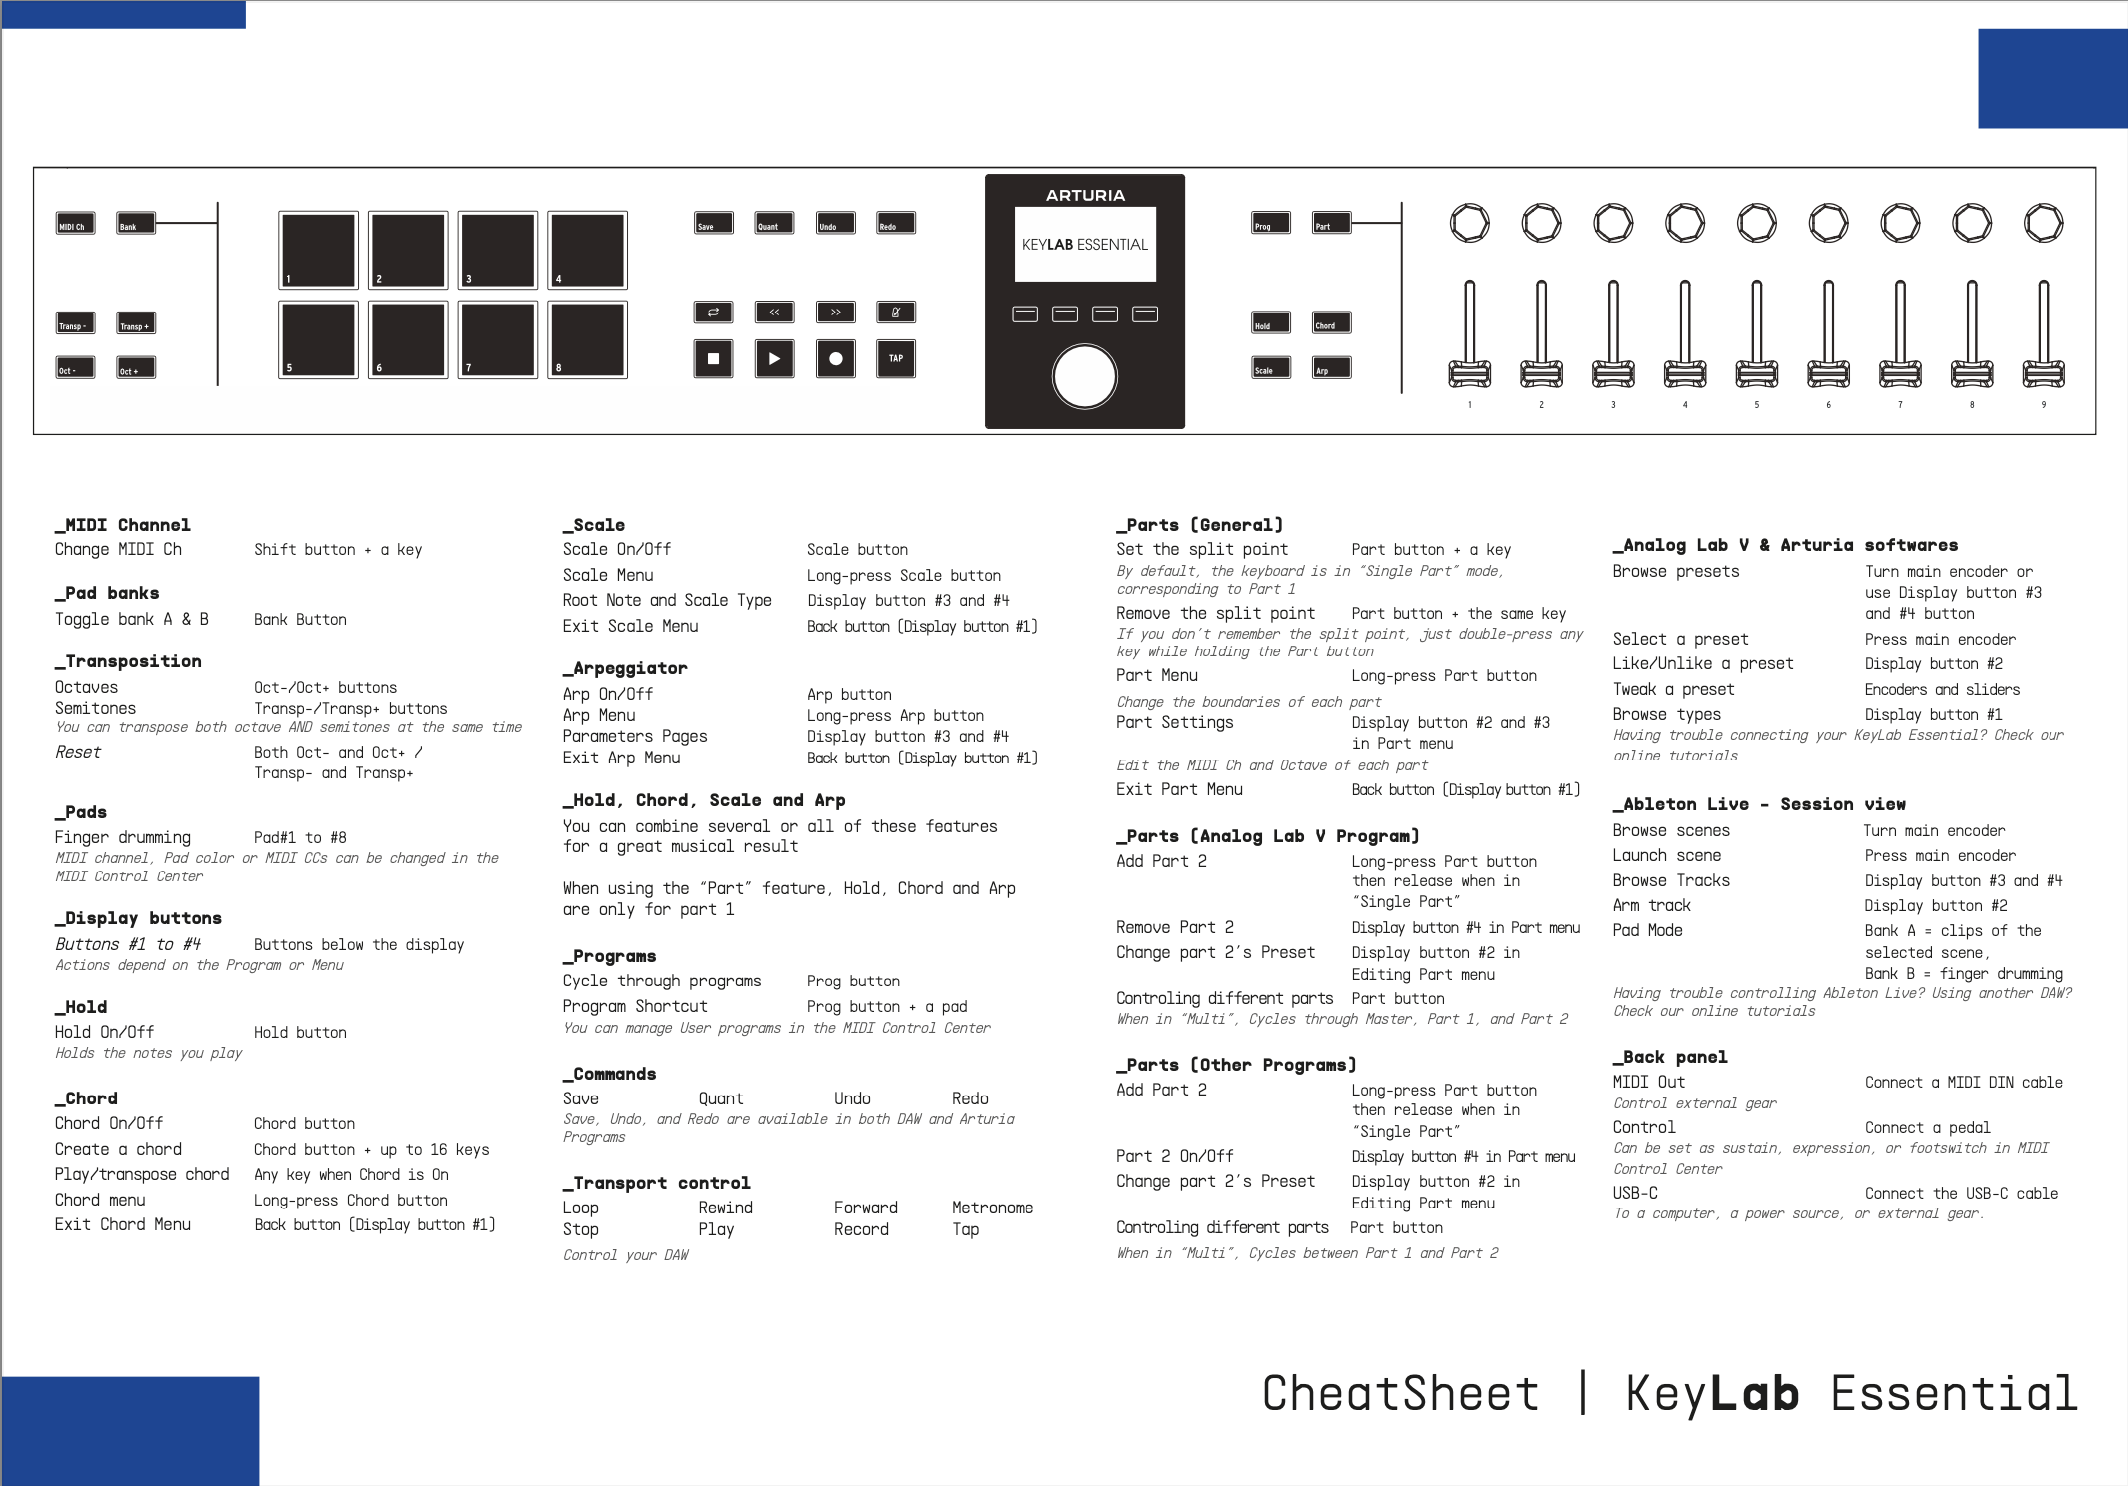 KeyLab Essential mk3 cheatsheet